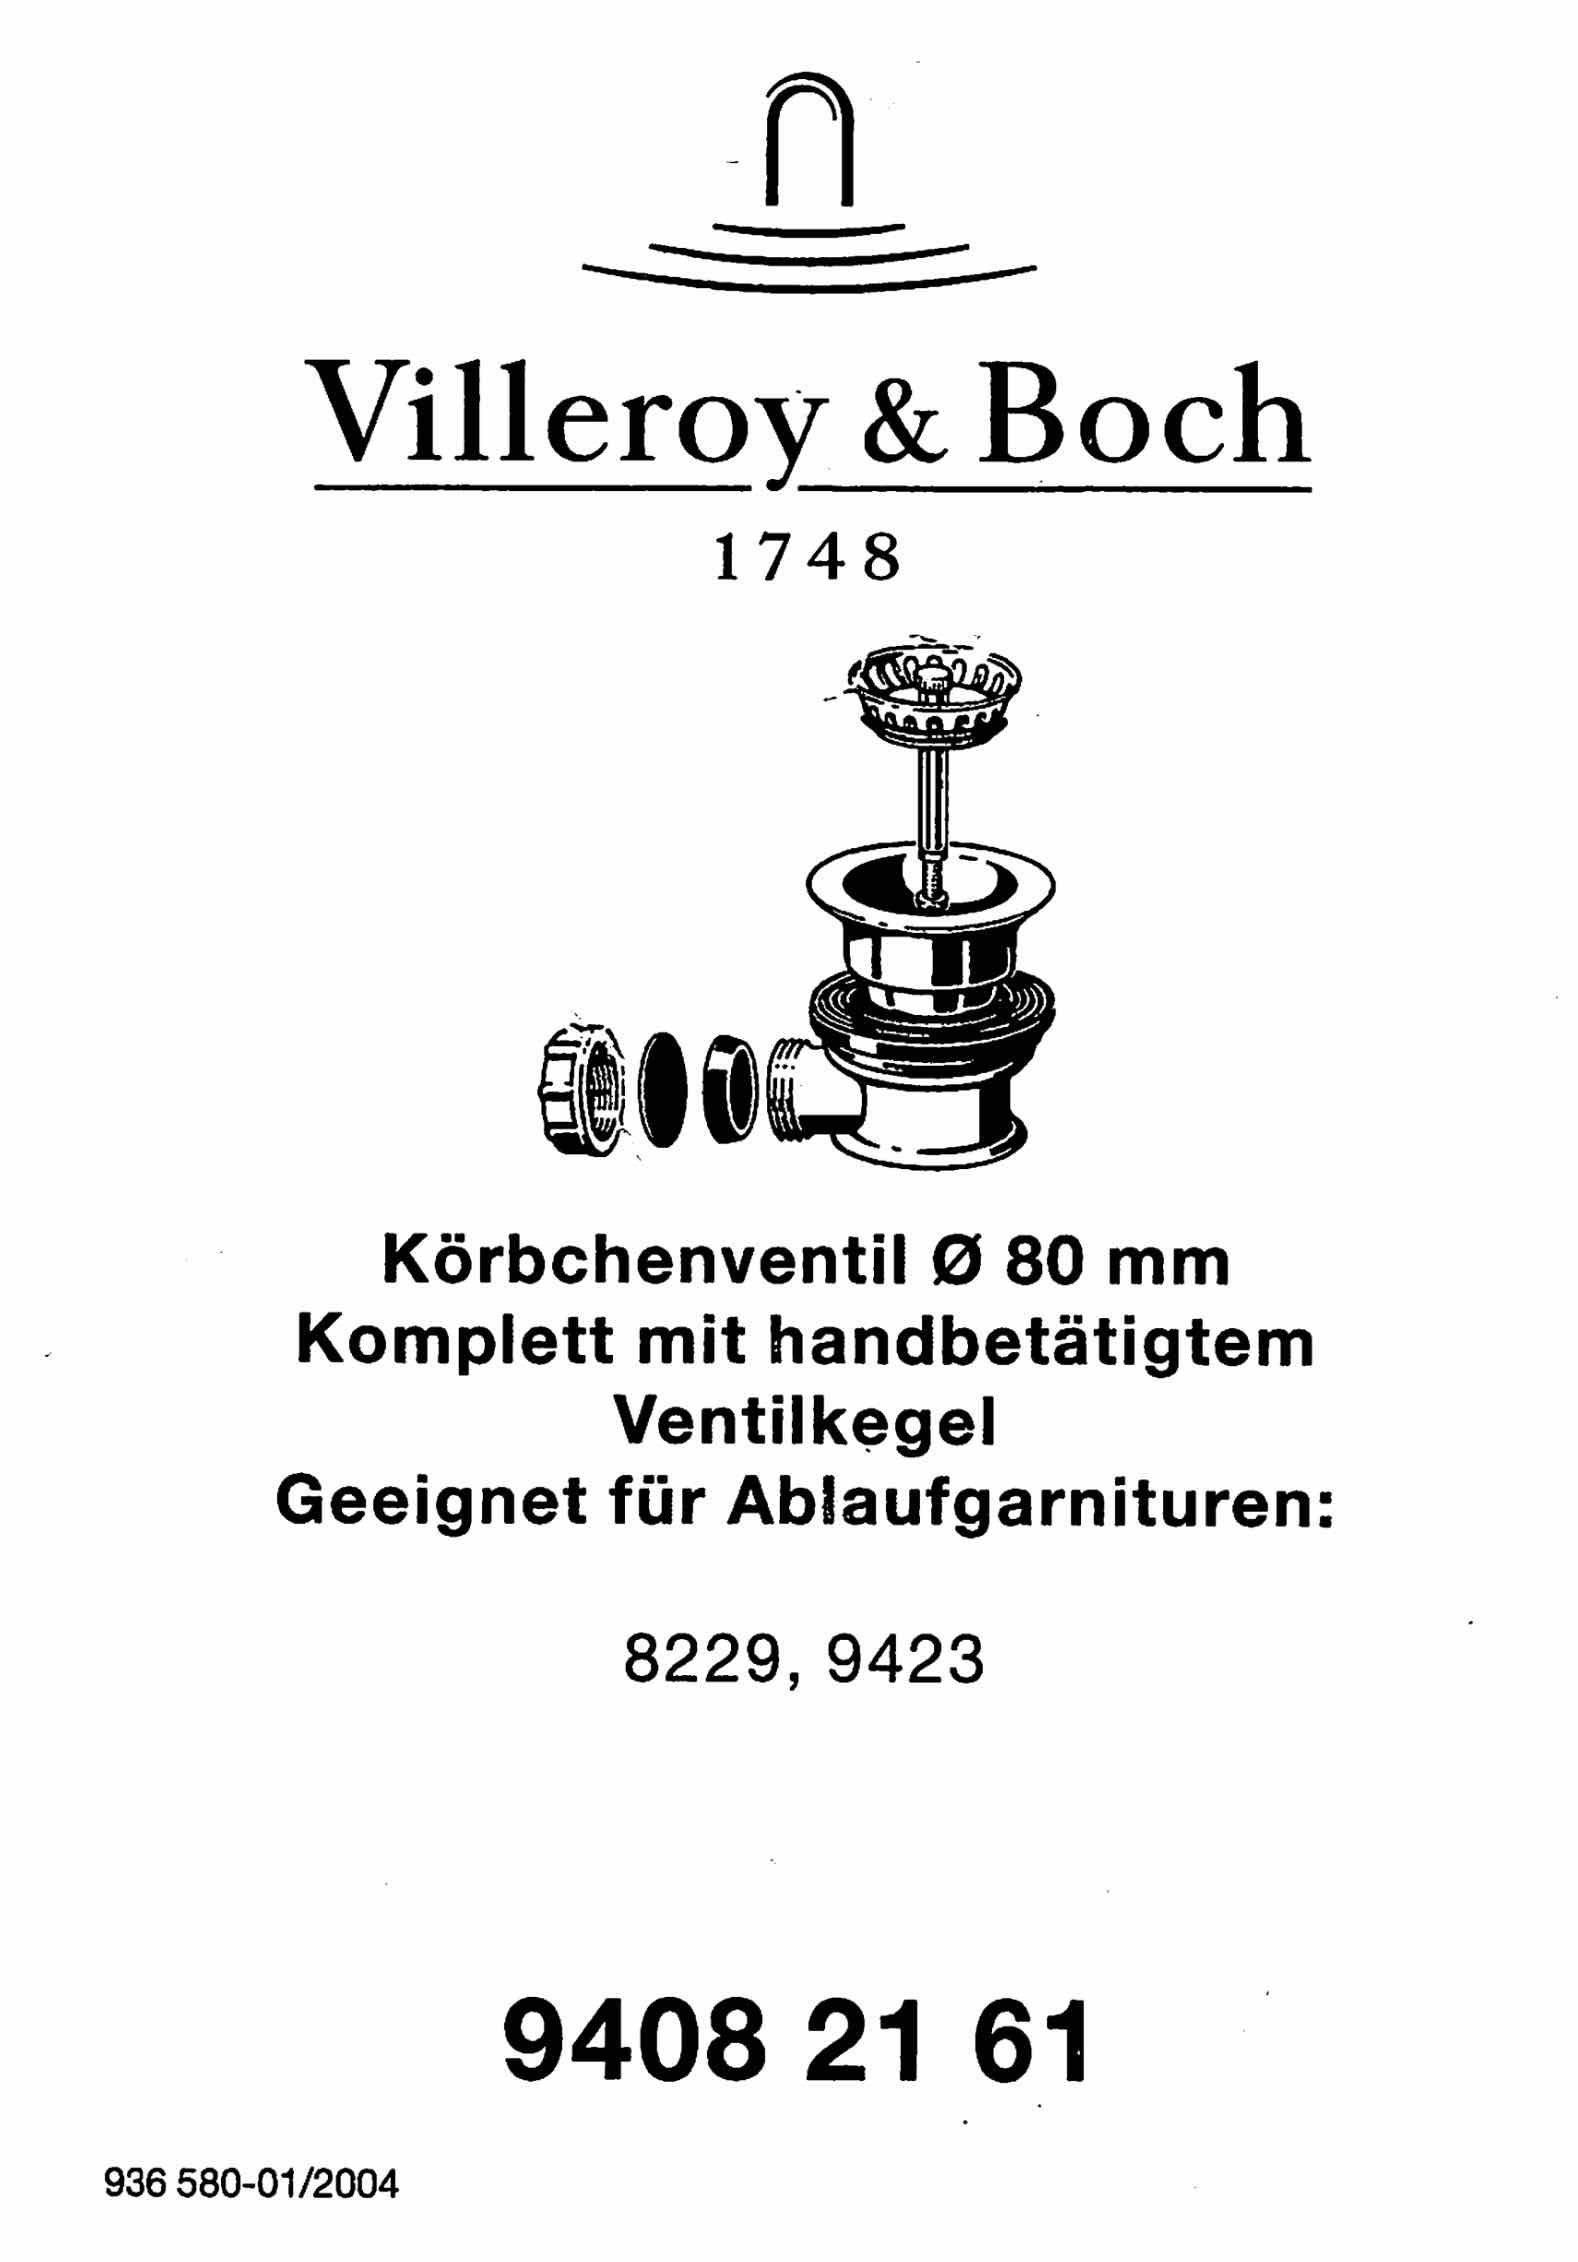 Villeroy & Boch Restebecken für Einbauspüle Villeroy Körbchenventil Boch & Profi handbetätigt